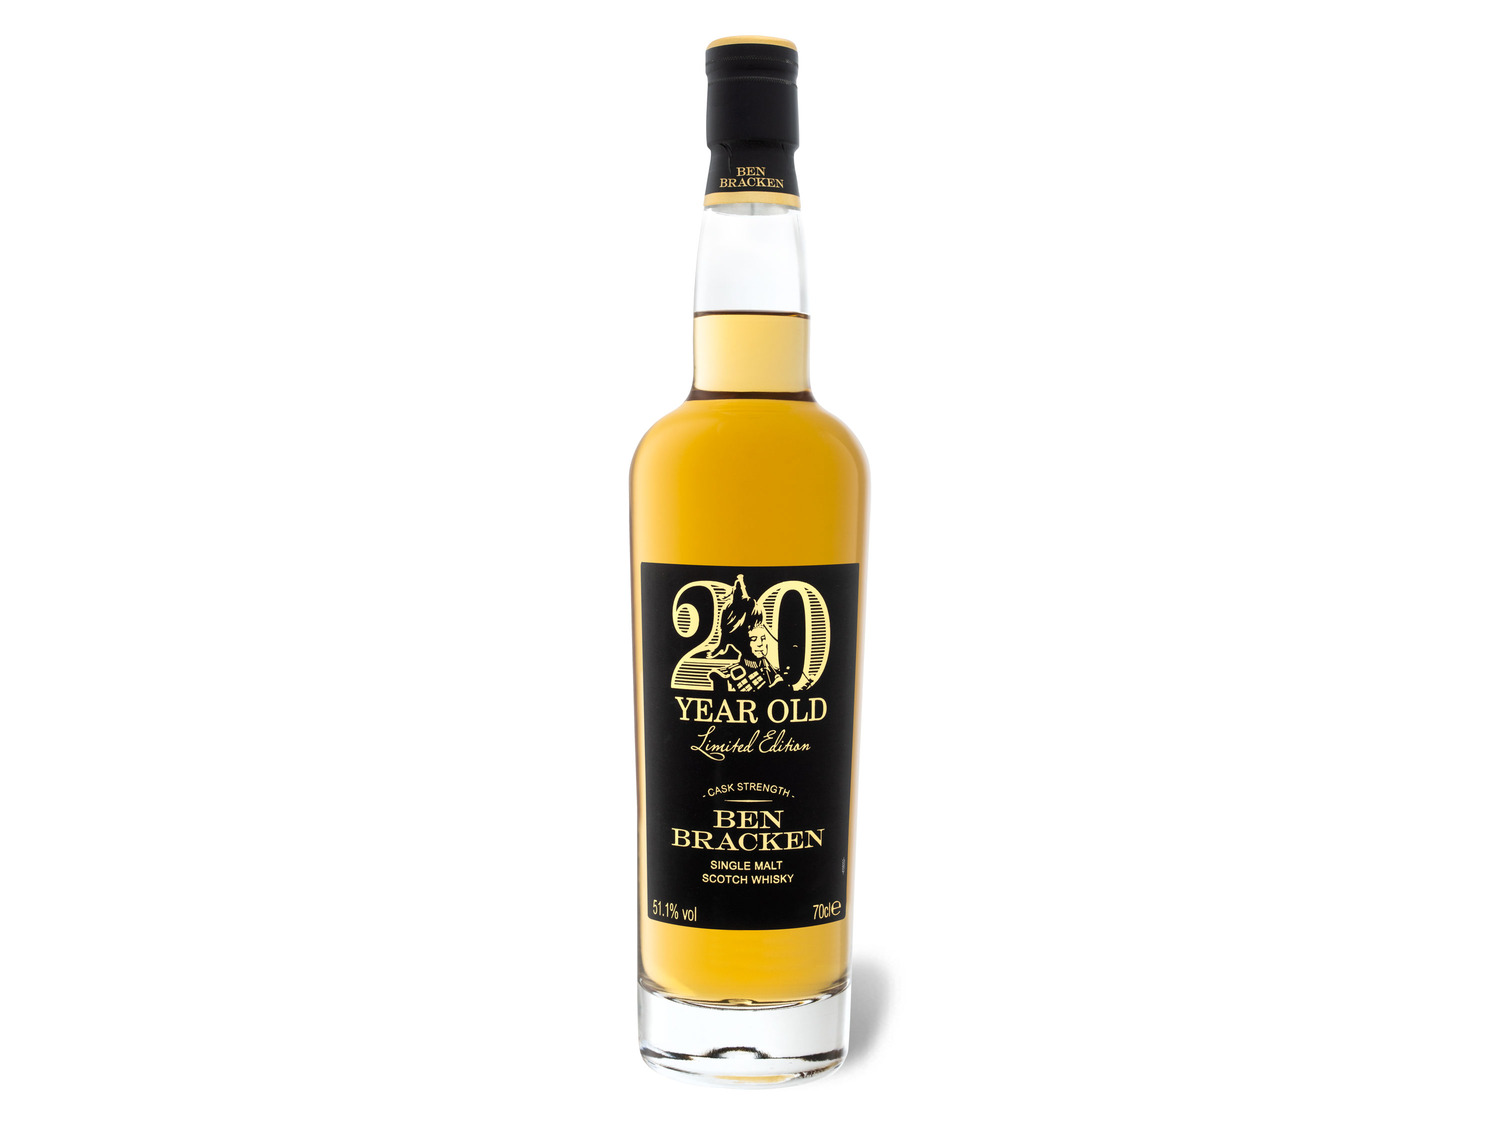 Ben Bracken Single Malt Scotch Whisky Limited Edition Cask Strength 20  Jahre mit Geschenkbox 51.1% Vol